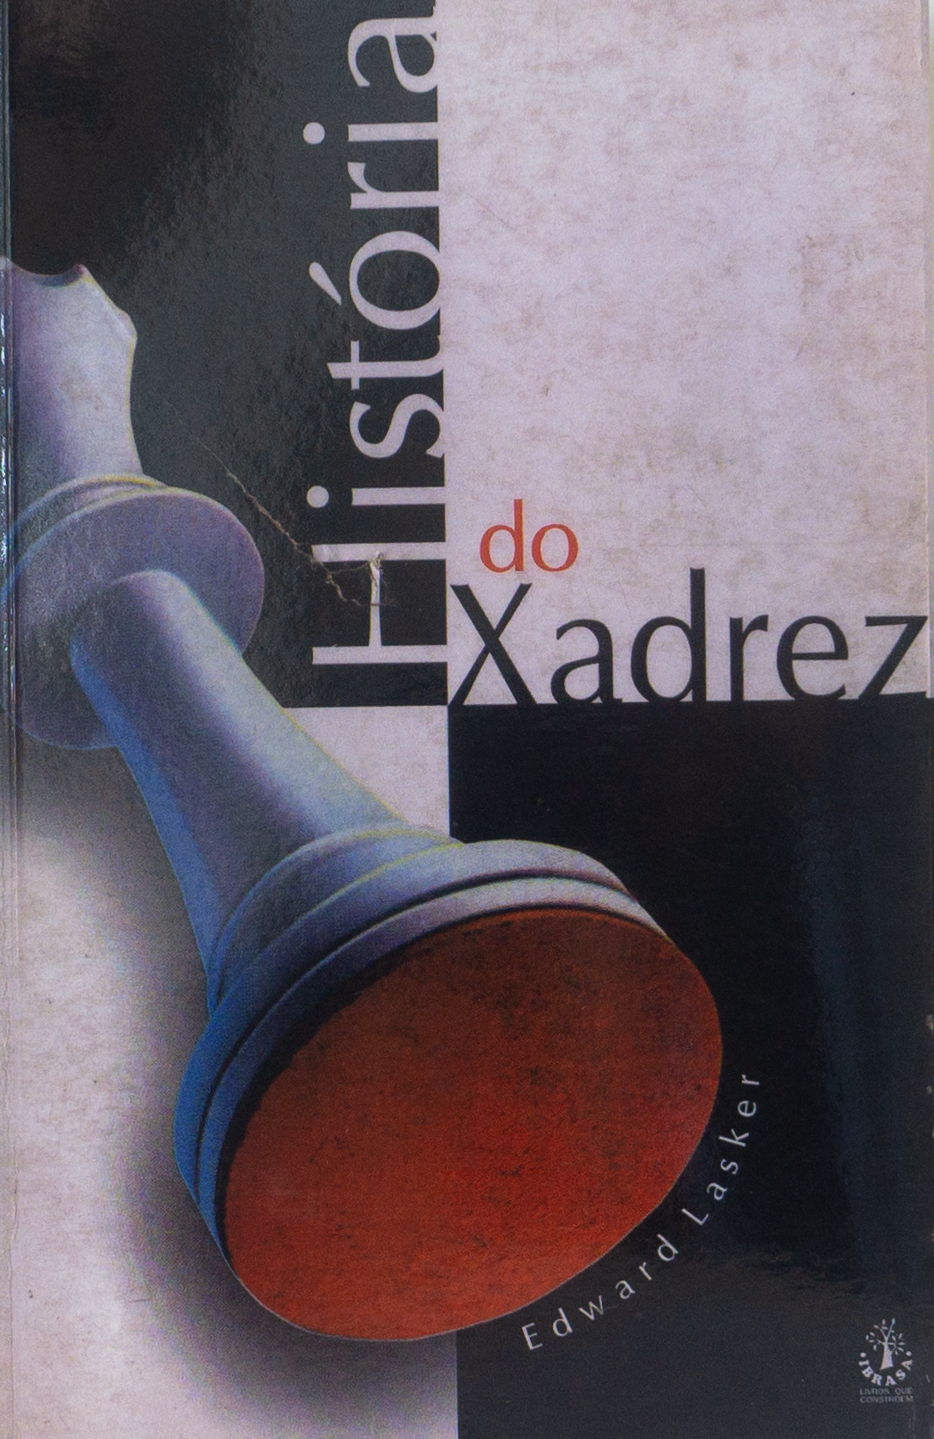 HISTÓRIA DE XADREZ